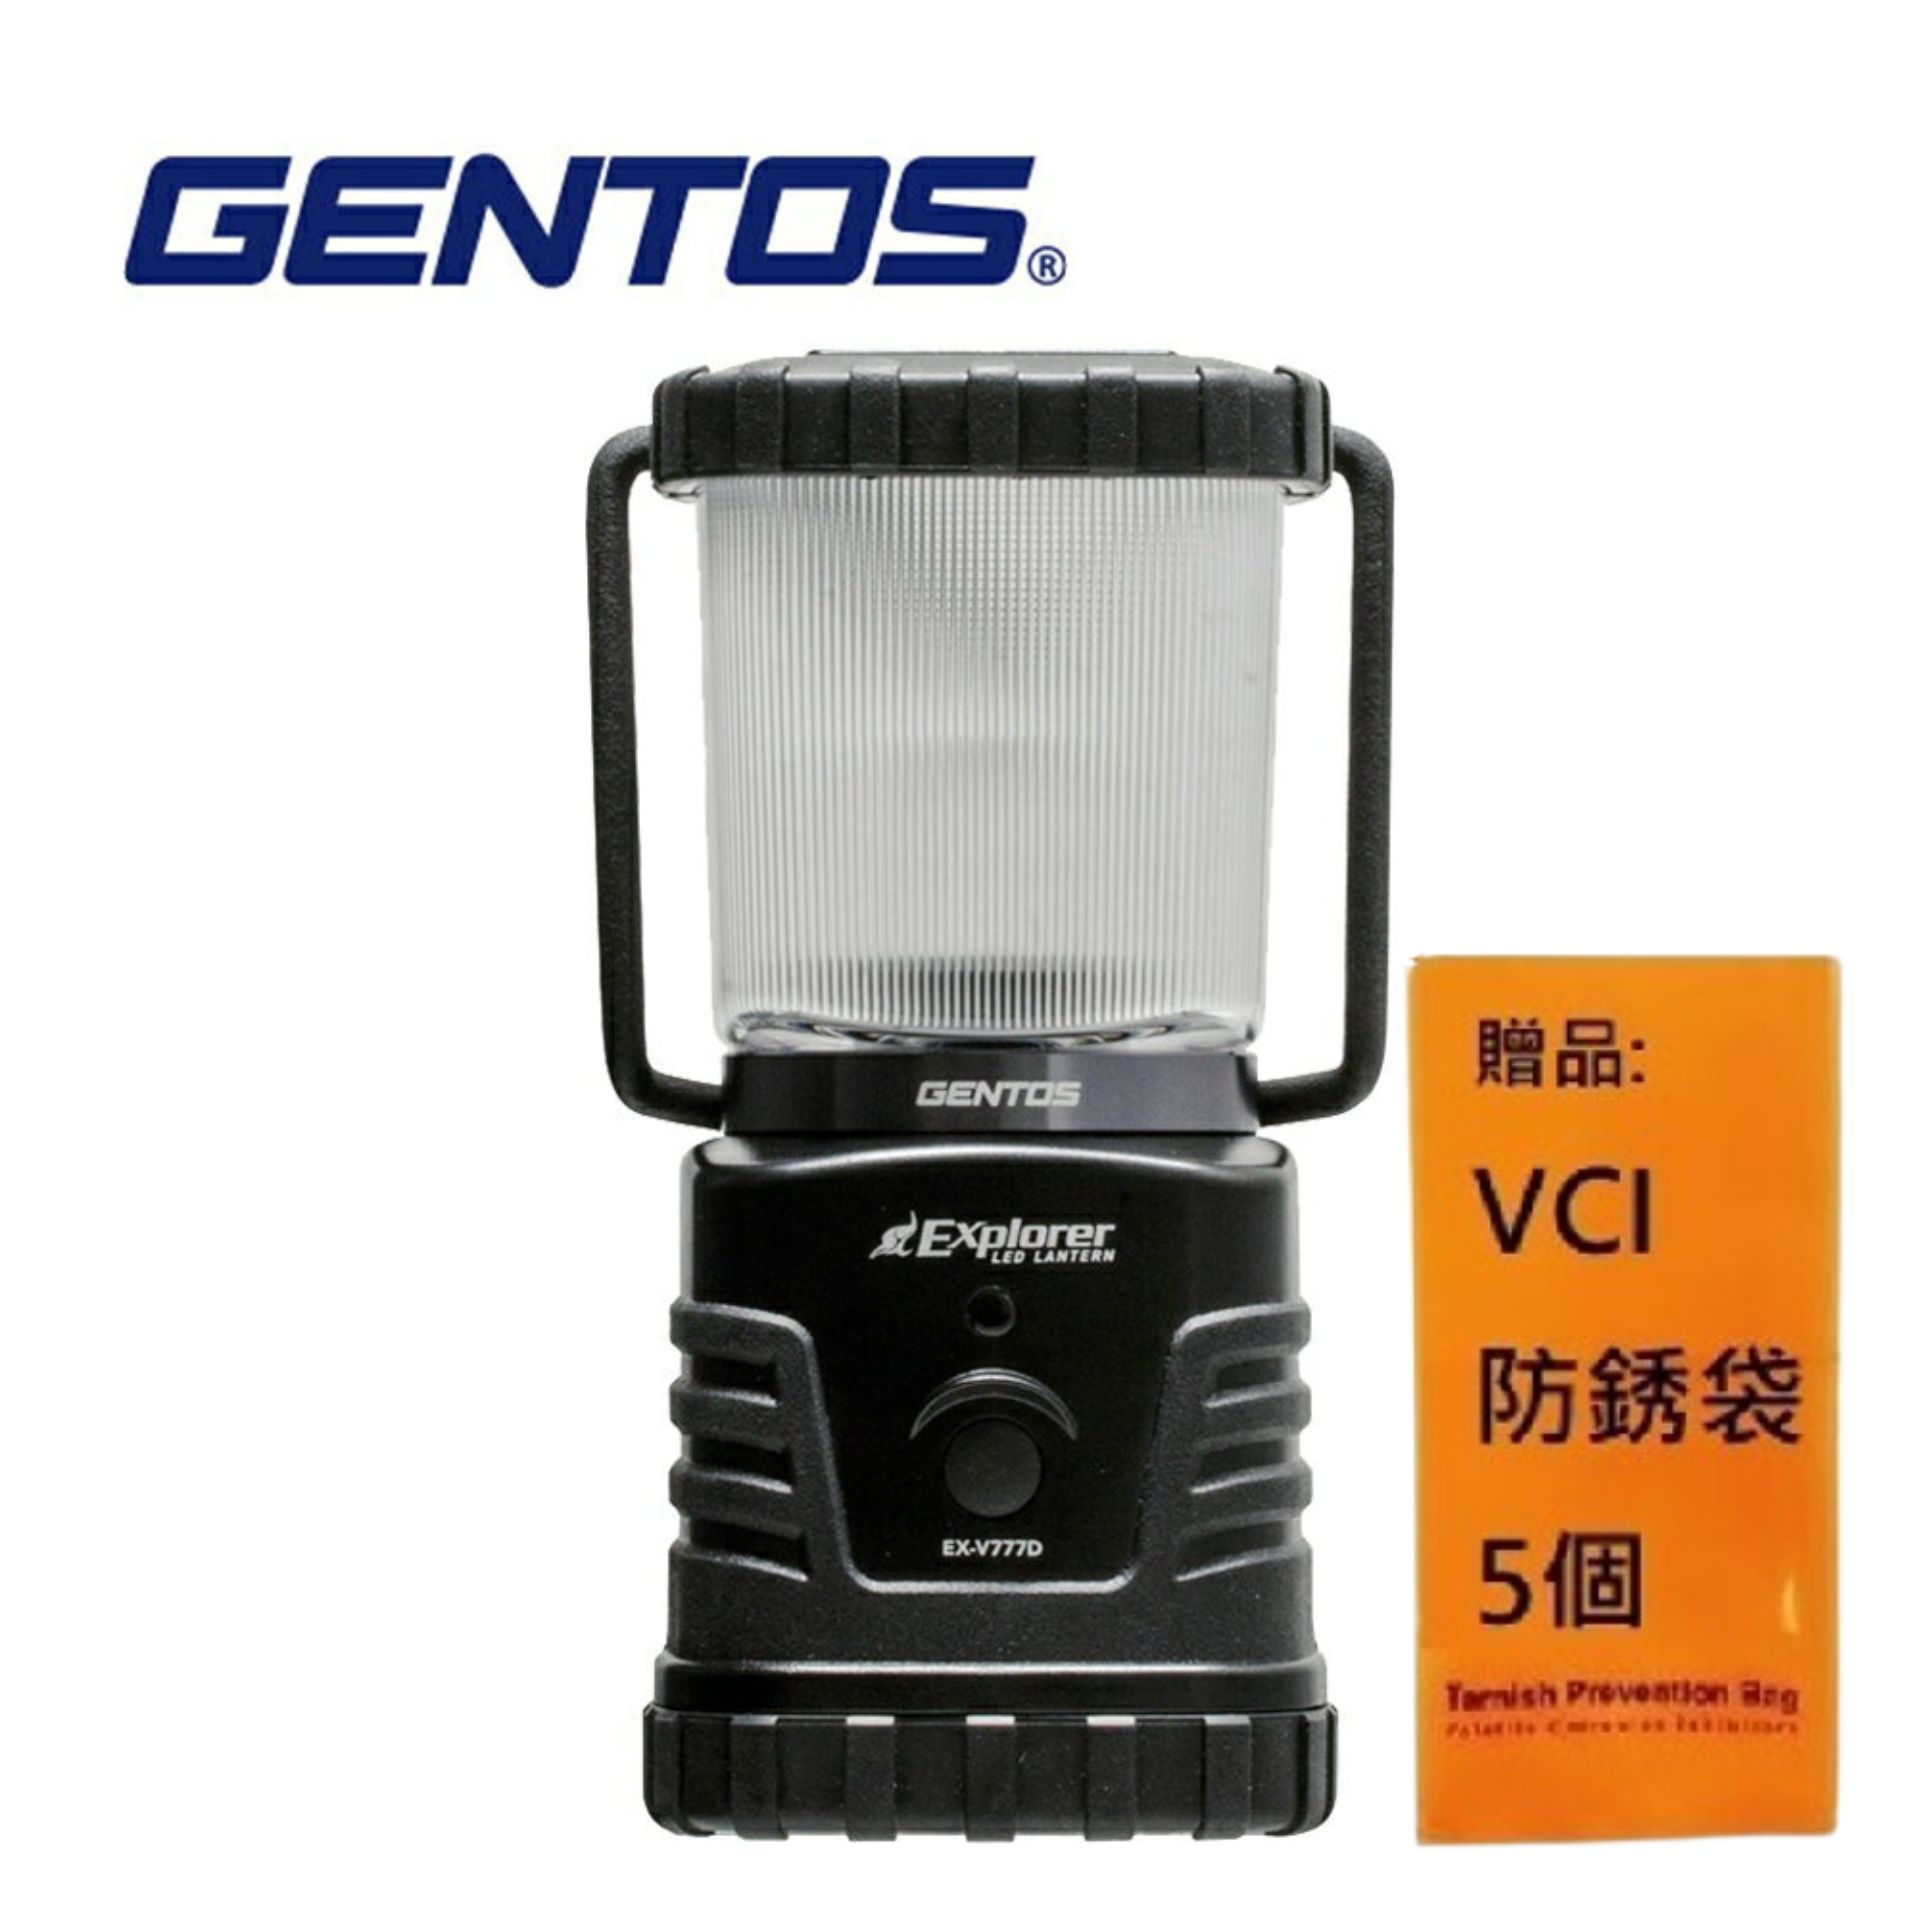 【Gentos】Explorer露營燈-360流明 IP64 EX-V777D 超強續航力 超長照明時間